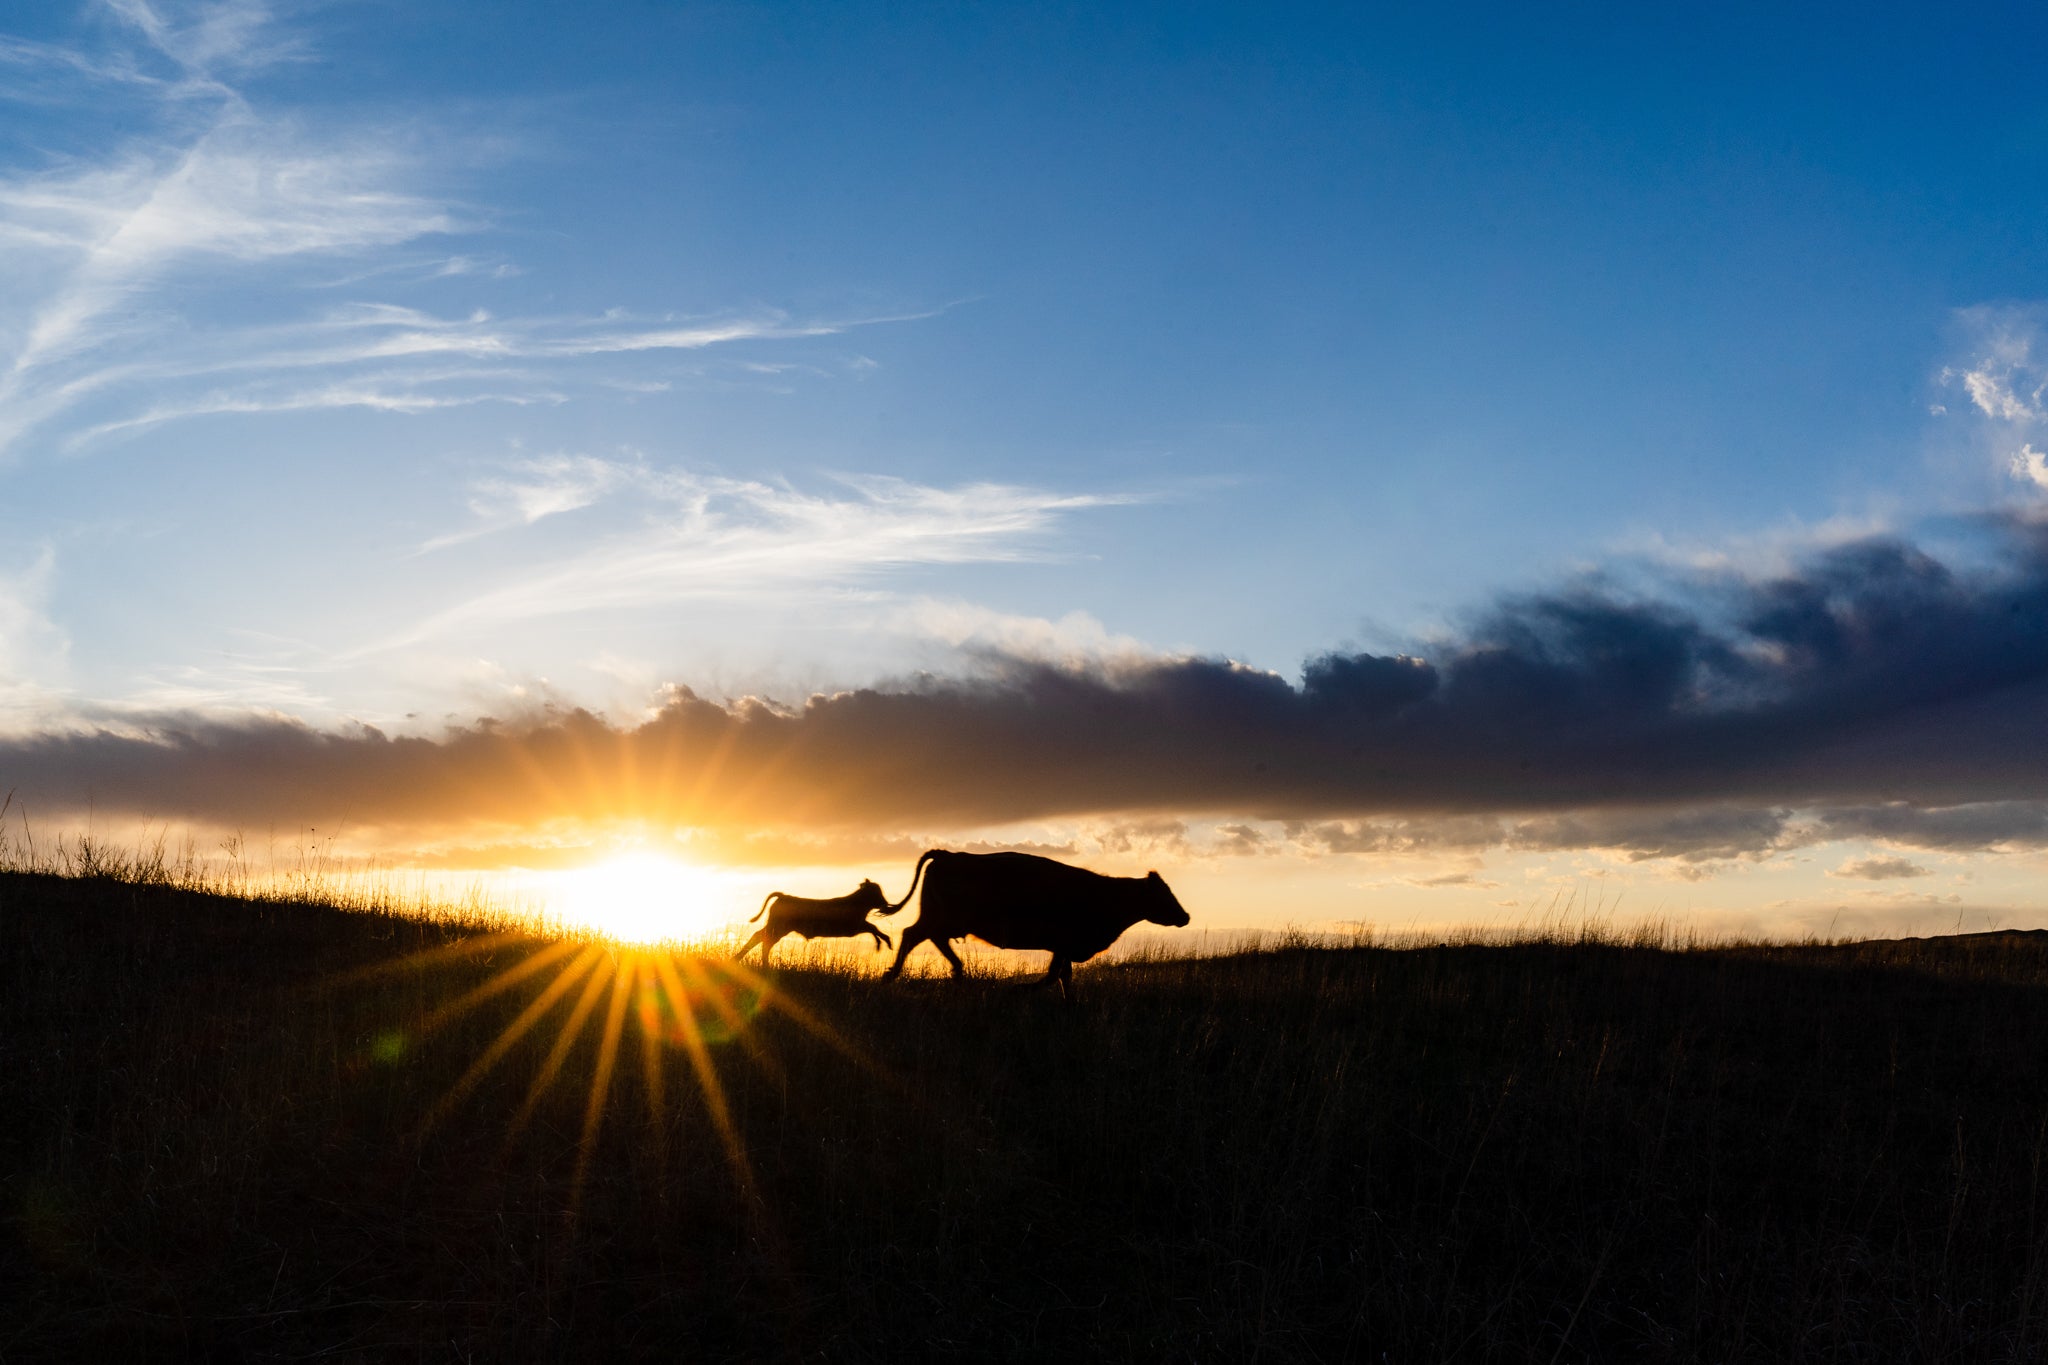 Mama cow and calf at sunset